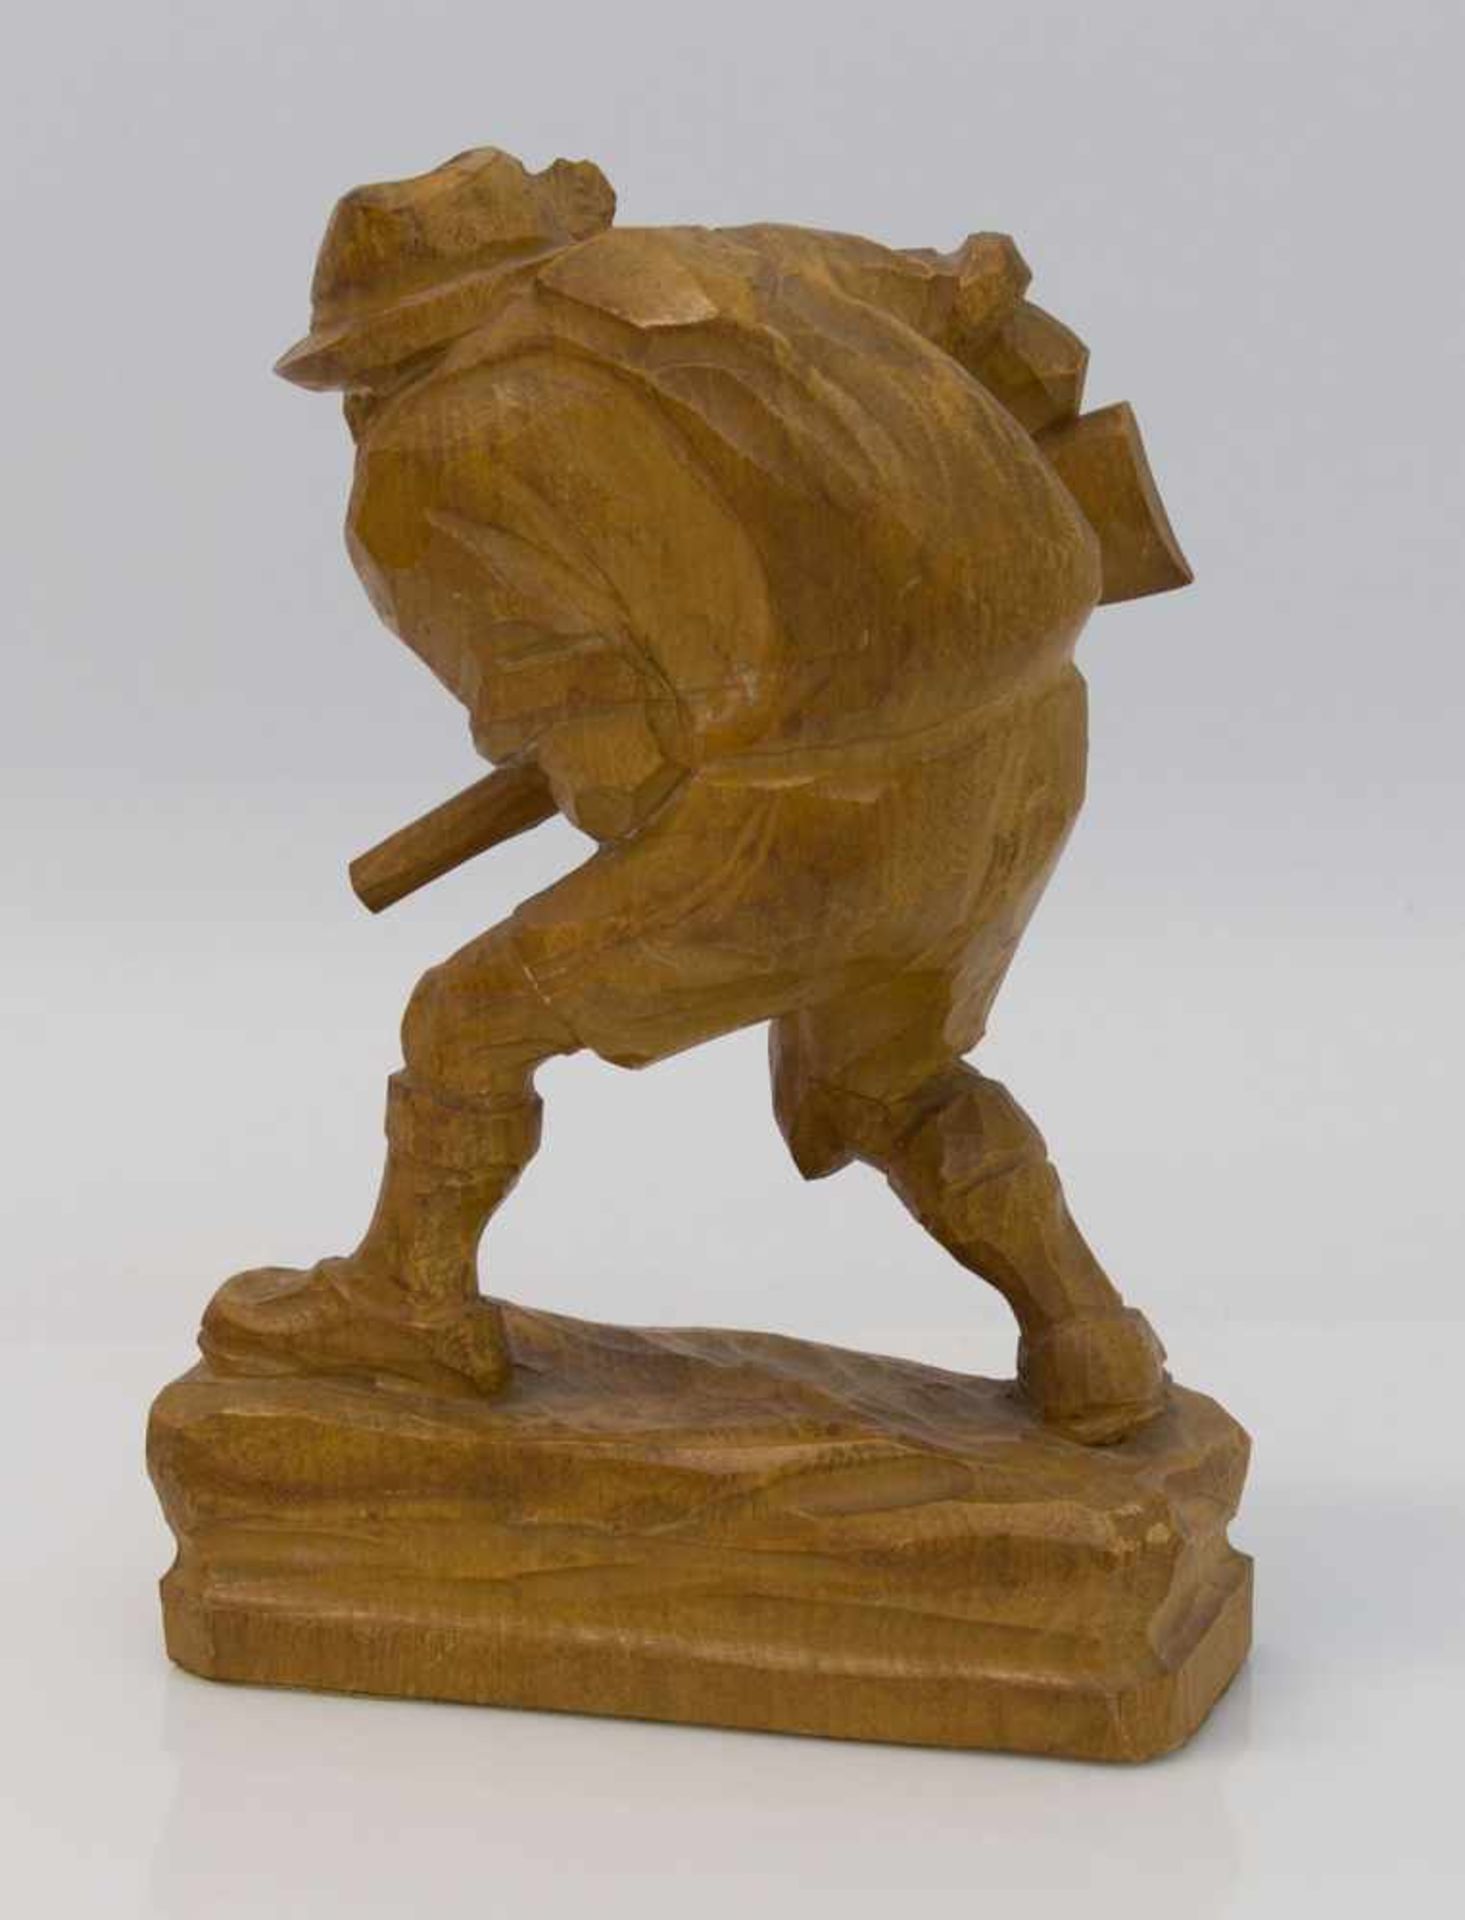 Wilddiebgeschnitzte Holzfigur eines Wilddiebes auf der Pirsch, H. 19 cm - Bild 2 aus 2